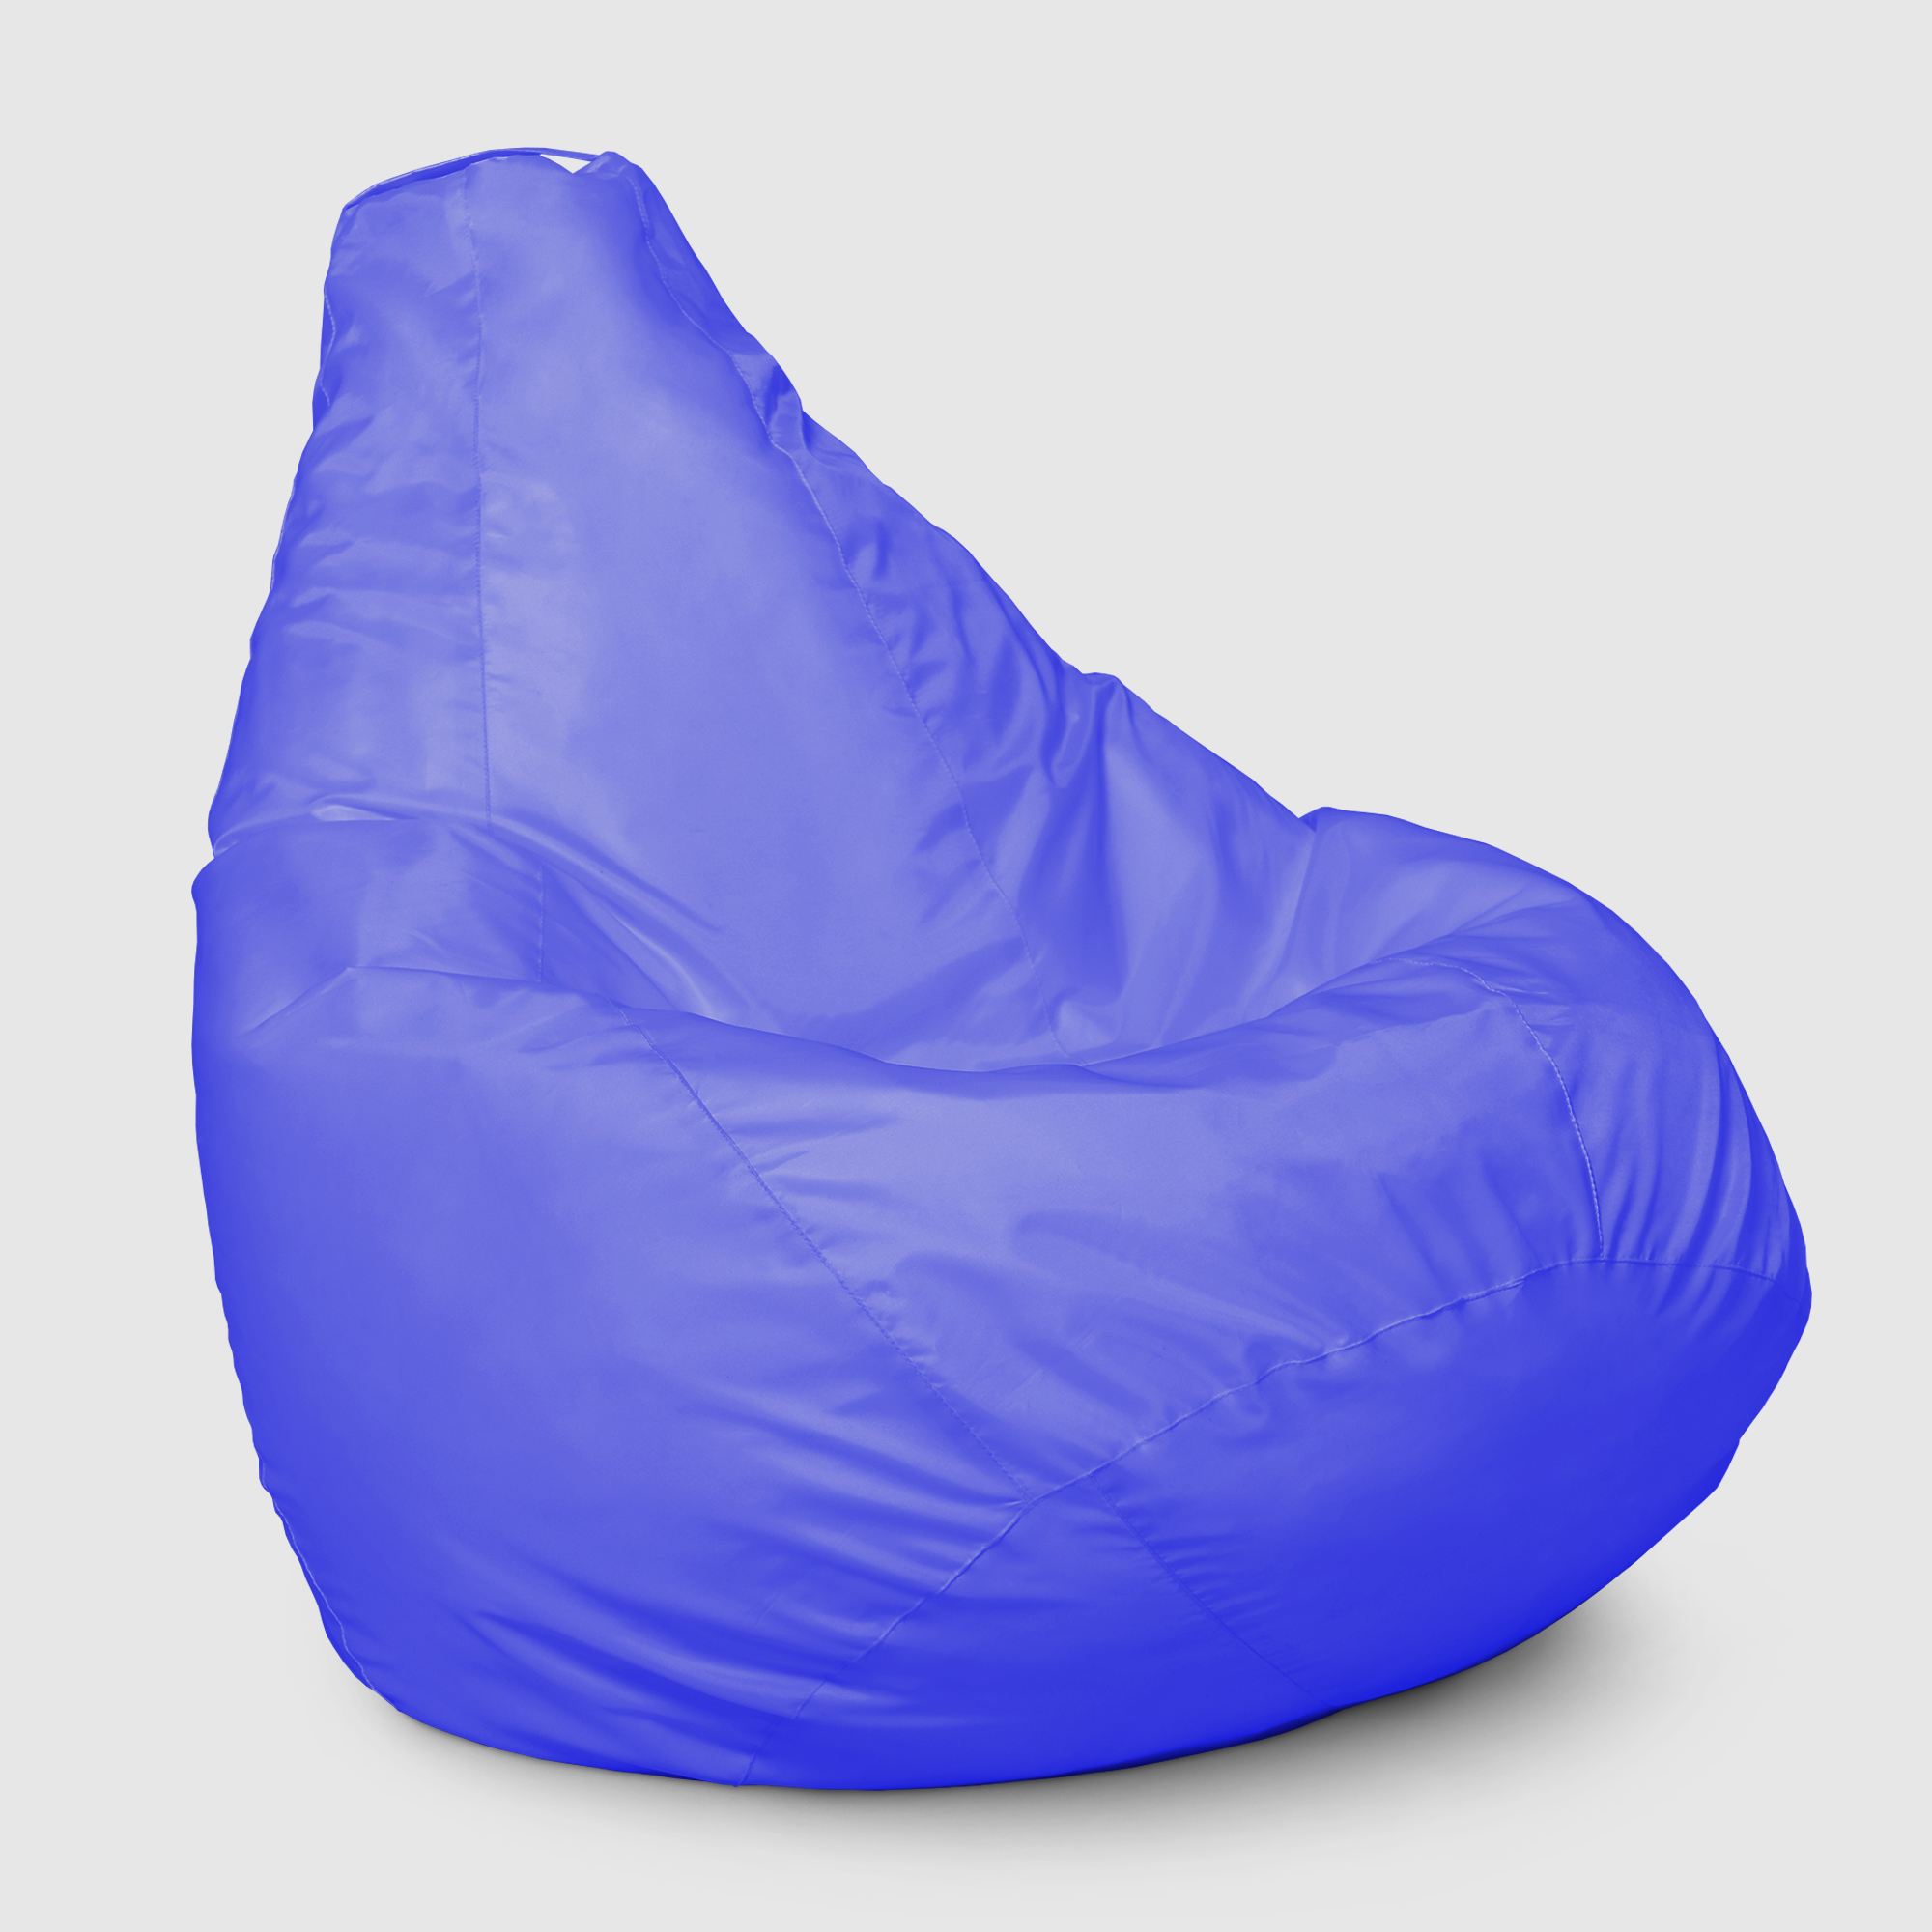 Кресло мешок Dreambag Меган xl Синее 85х85х125 см кресло мешок dreambag меган xl розовое 85х85х125см